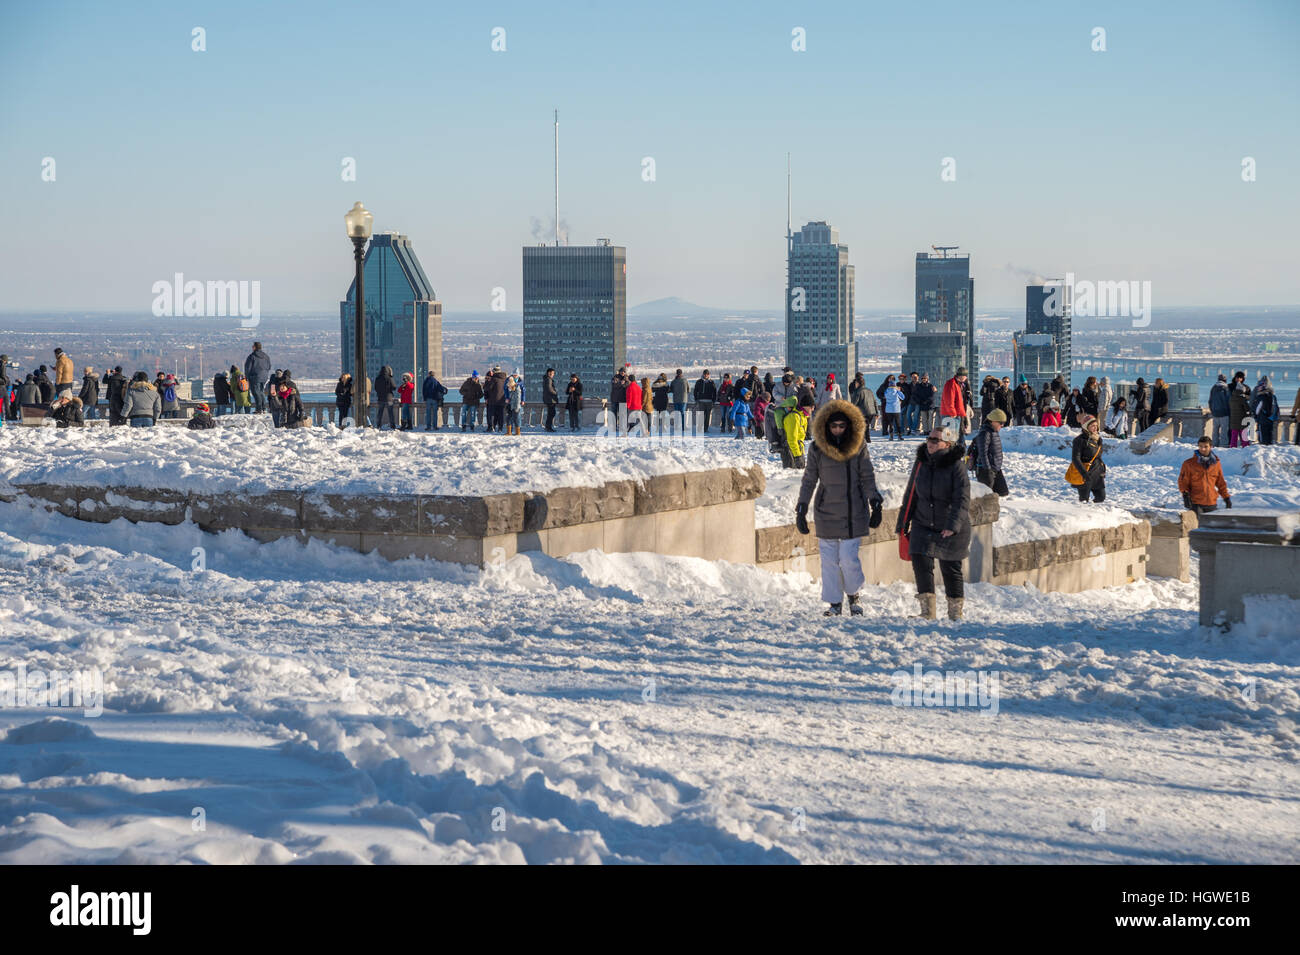 Montréal, CA - 1 janvier 2017 : Ville de Montréal et les personnes au Belvédère Kondiaronk sur le mont Royal pendant la saison d'hiver. Banque D'Images